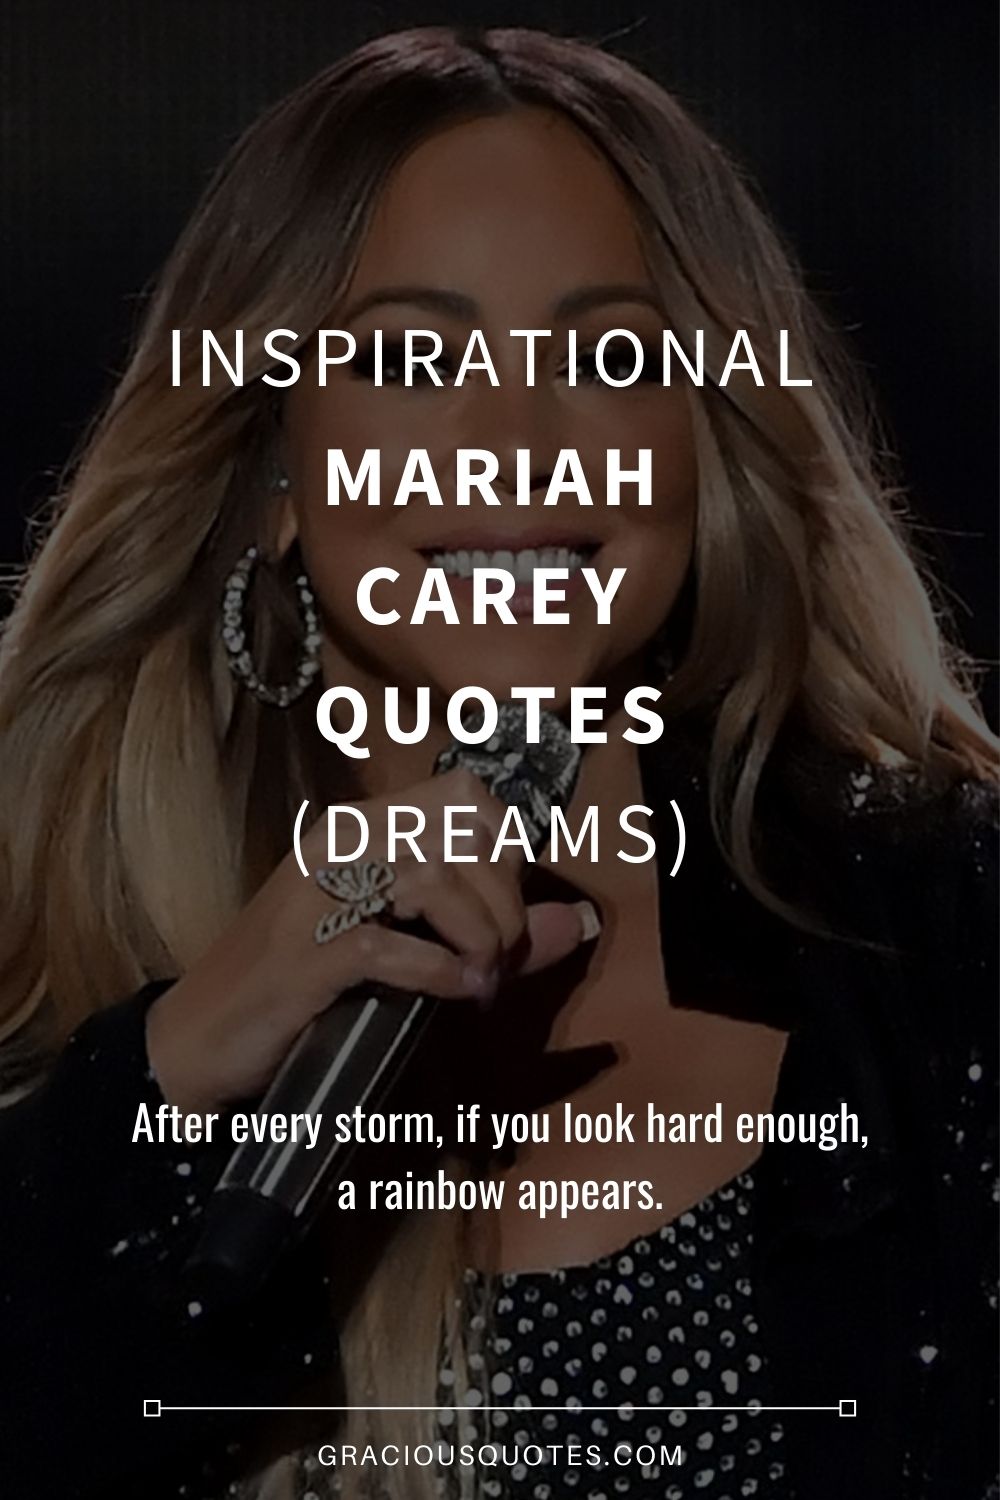 Inspirational Mariah Carey Quotes (DREAMS) - Gracious Quotes